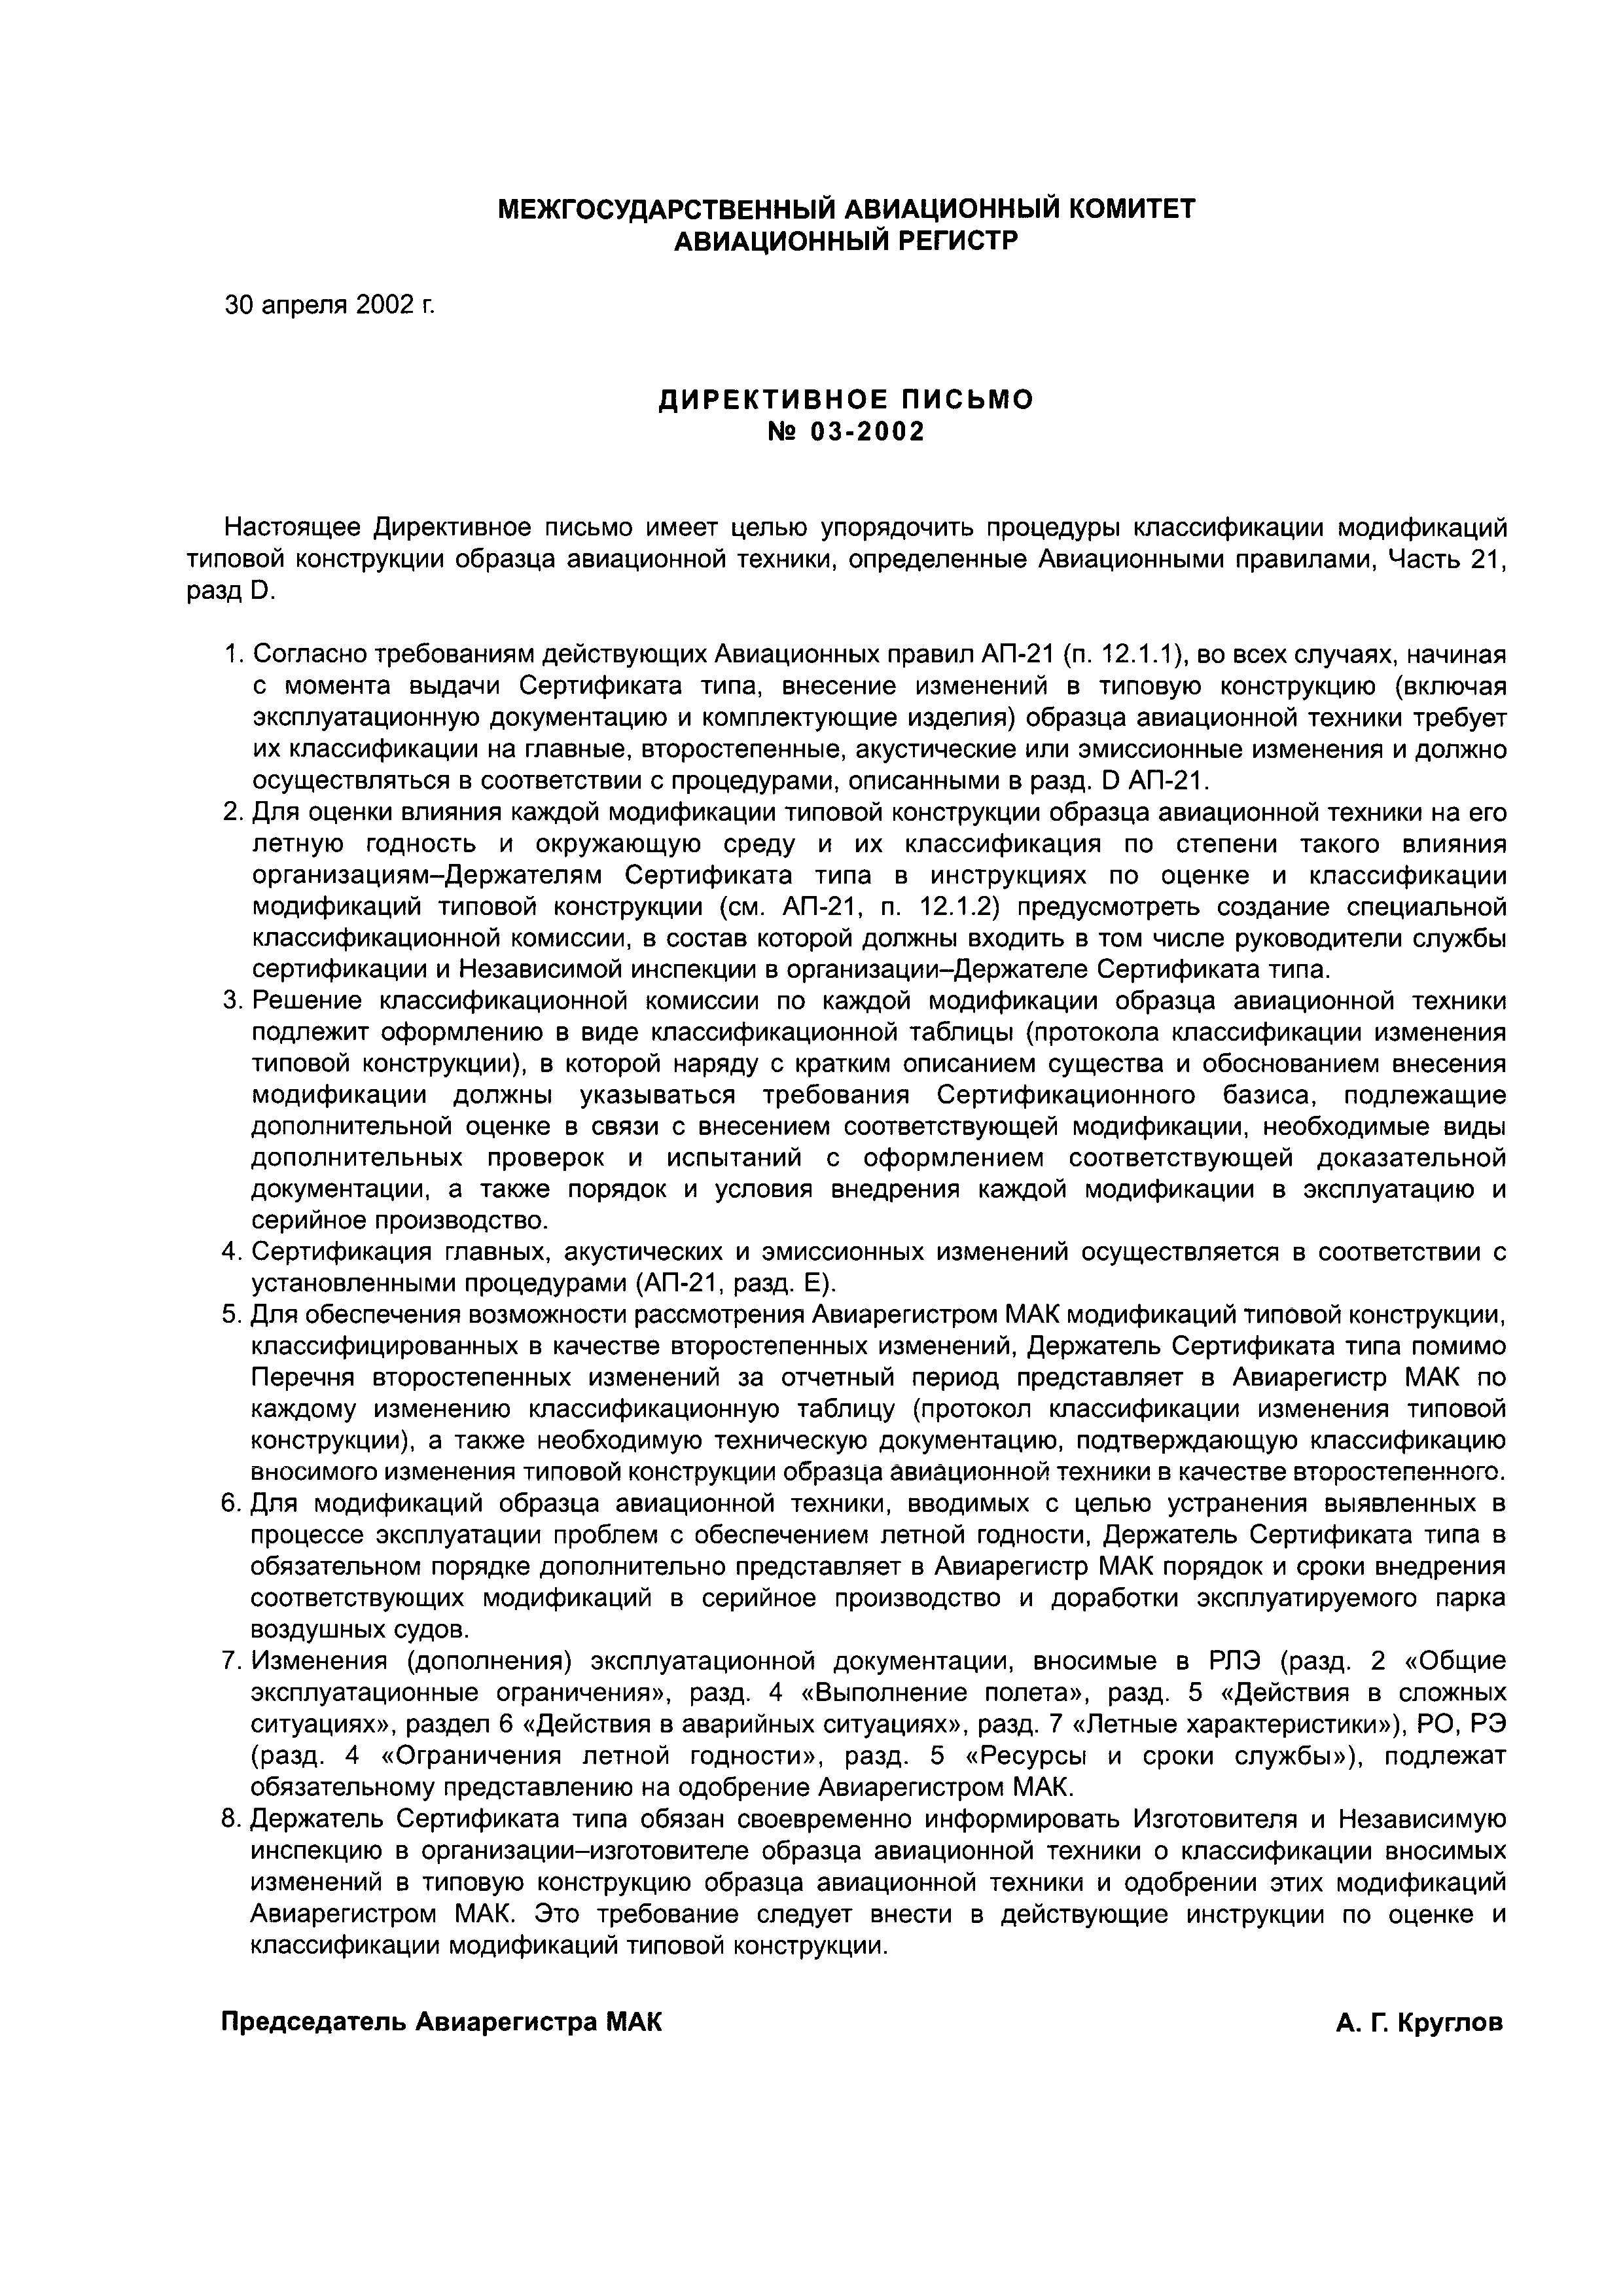 Директивное письмо 03-2002